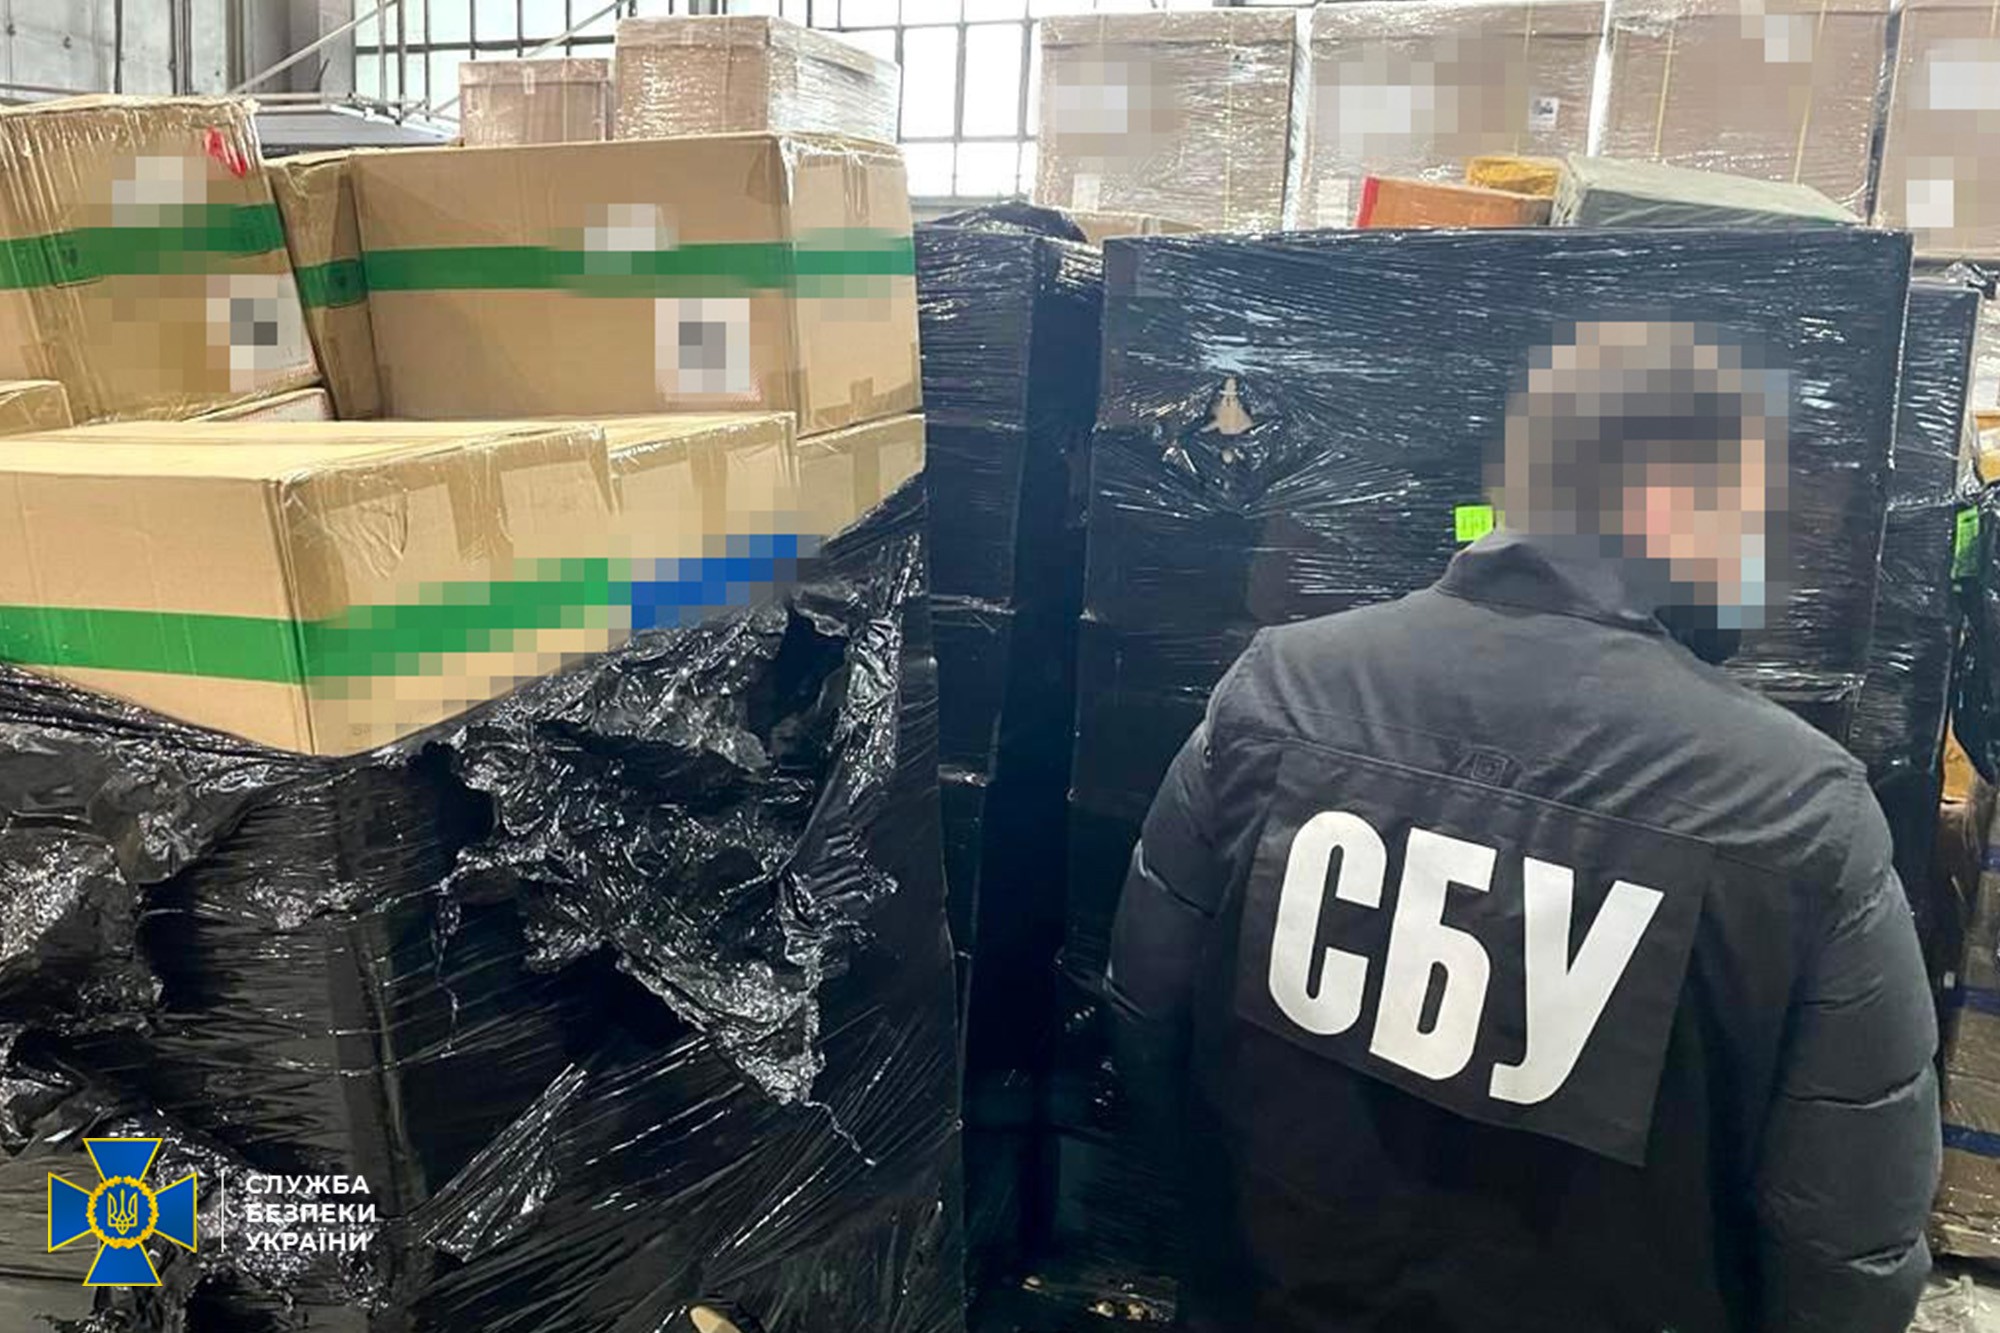 Через аэропорт “Борисполь” пытались незаконно ввезти в Украину более 7 тонн контрафактных электронных сигарет (фото)